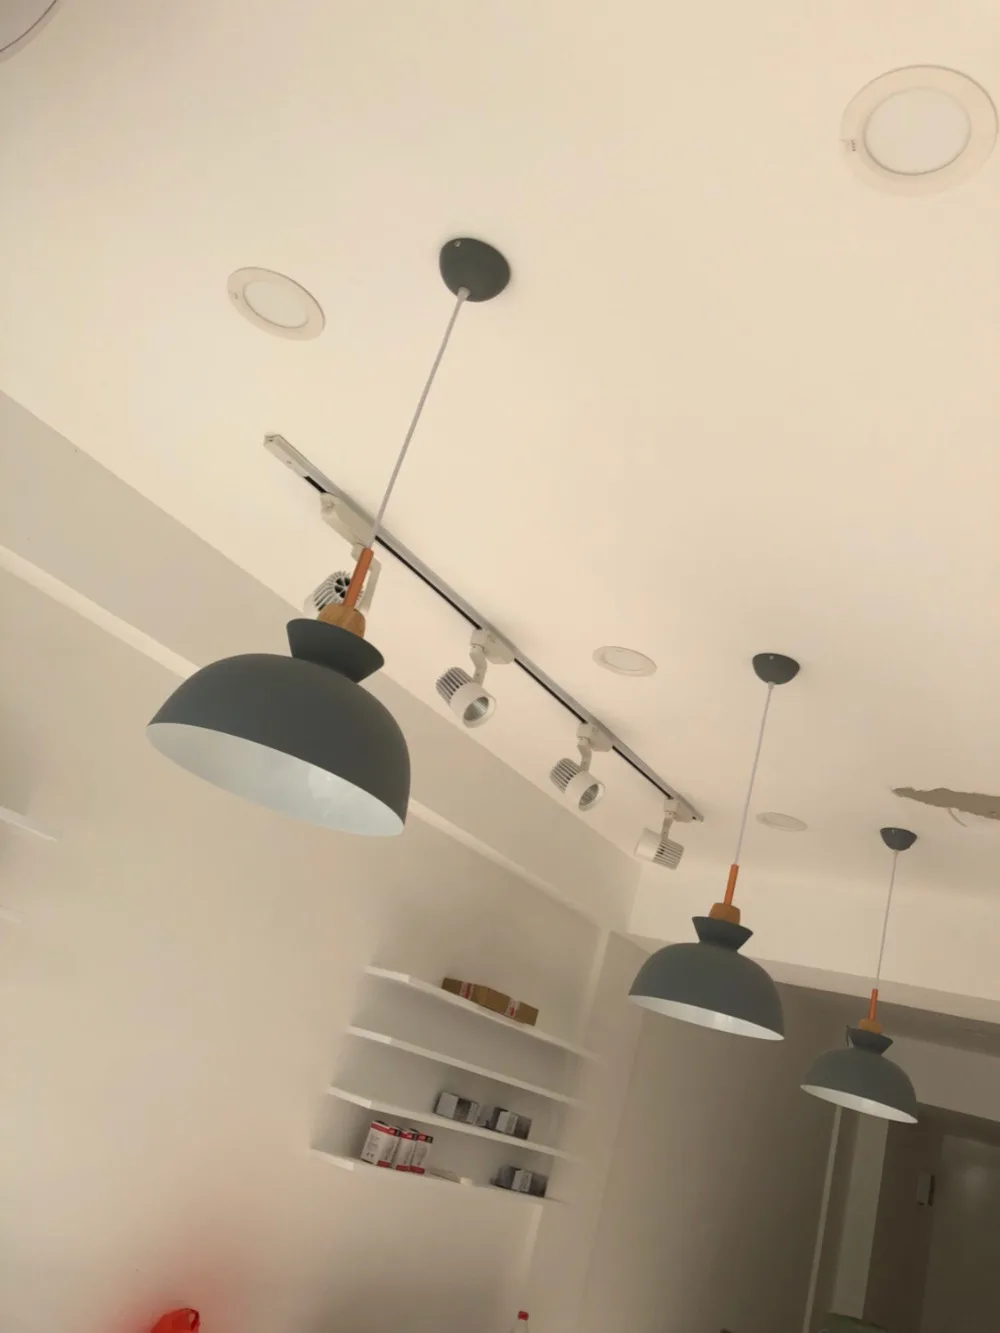 Модный внутренний светильник ing подвесной светильник s дерево и алюминий лампа для ресторана бара кофе столовой светодиодный подвесной светильник